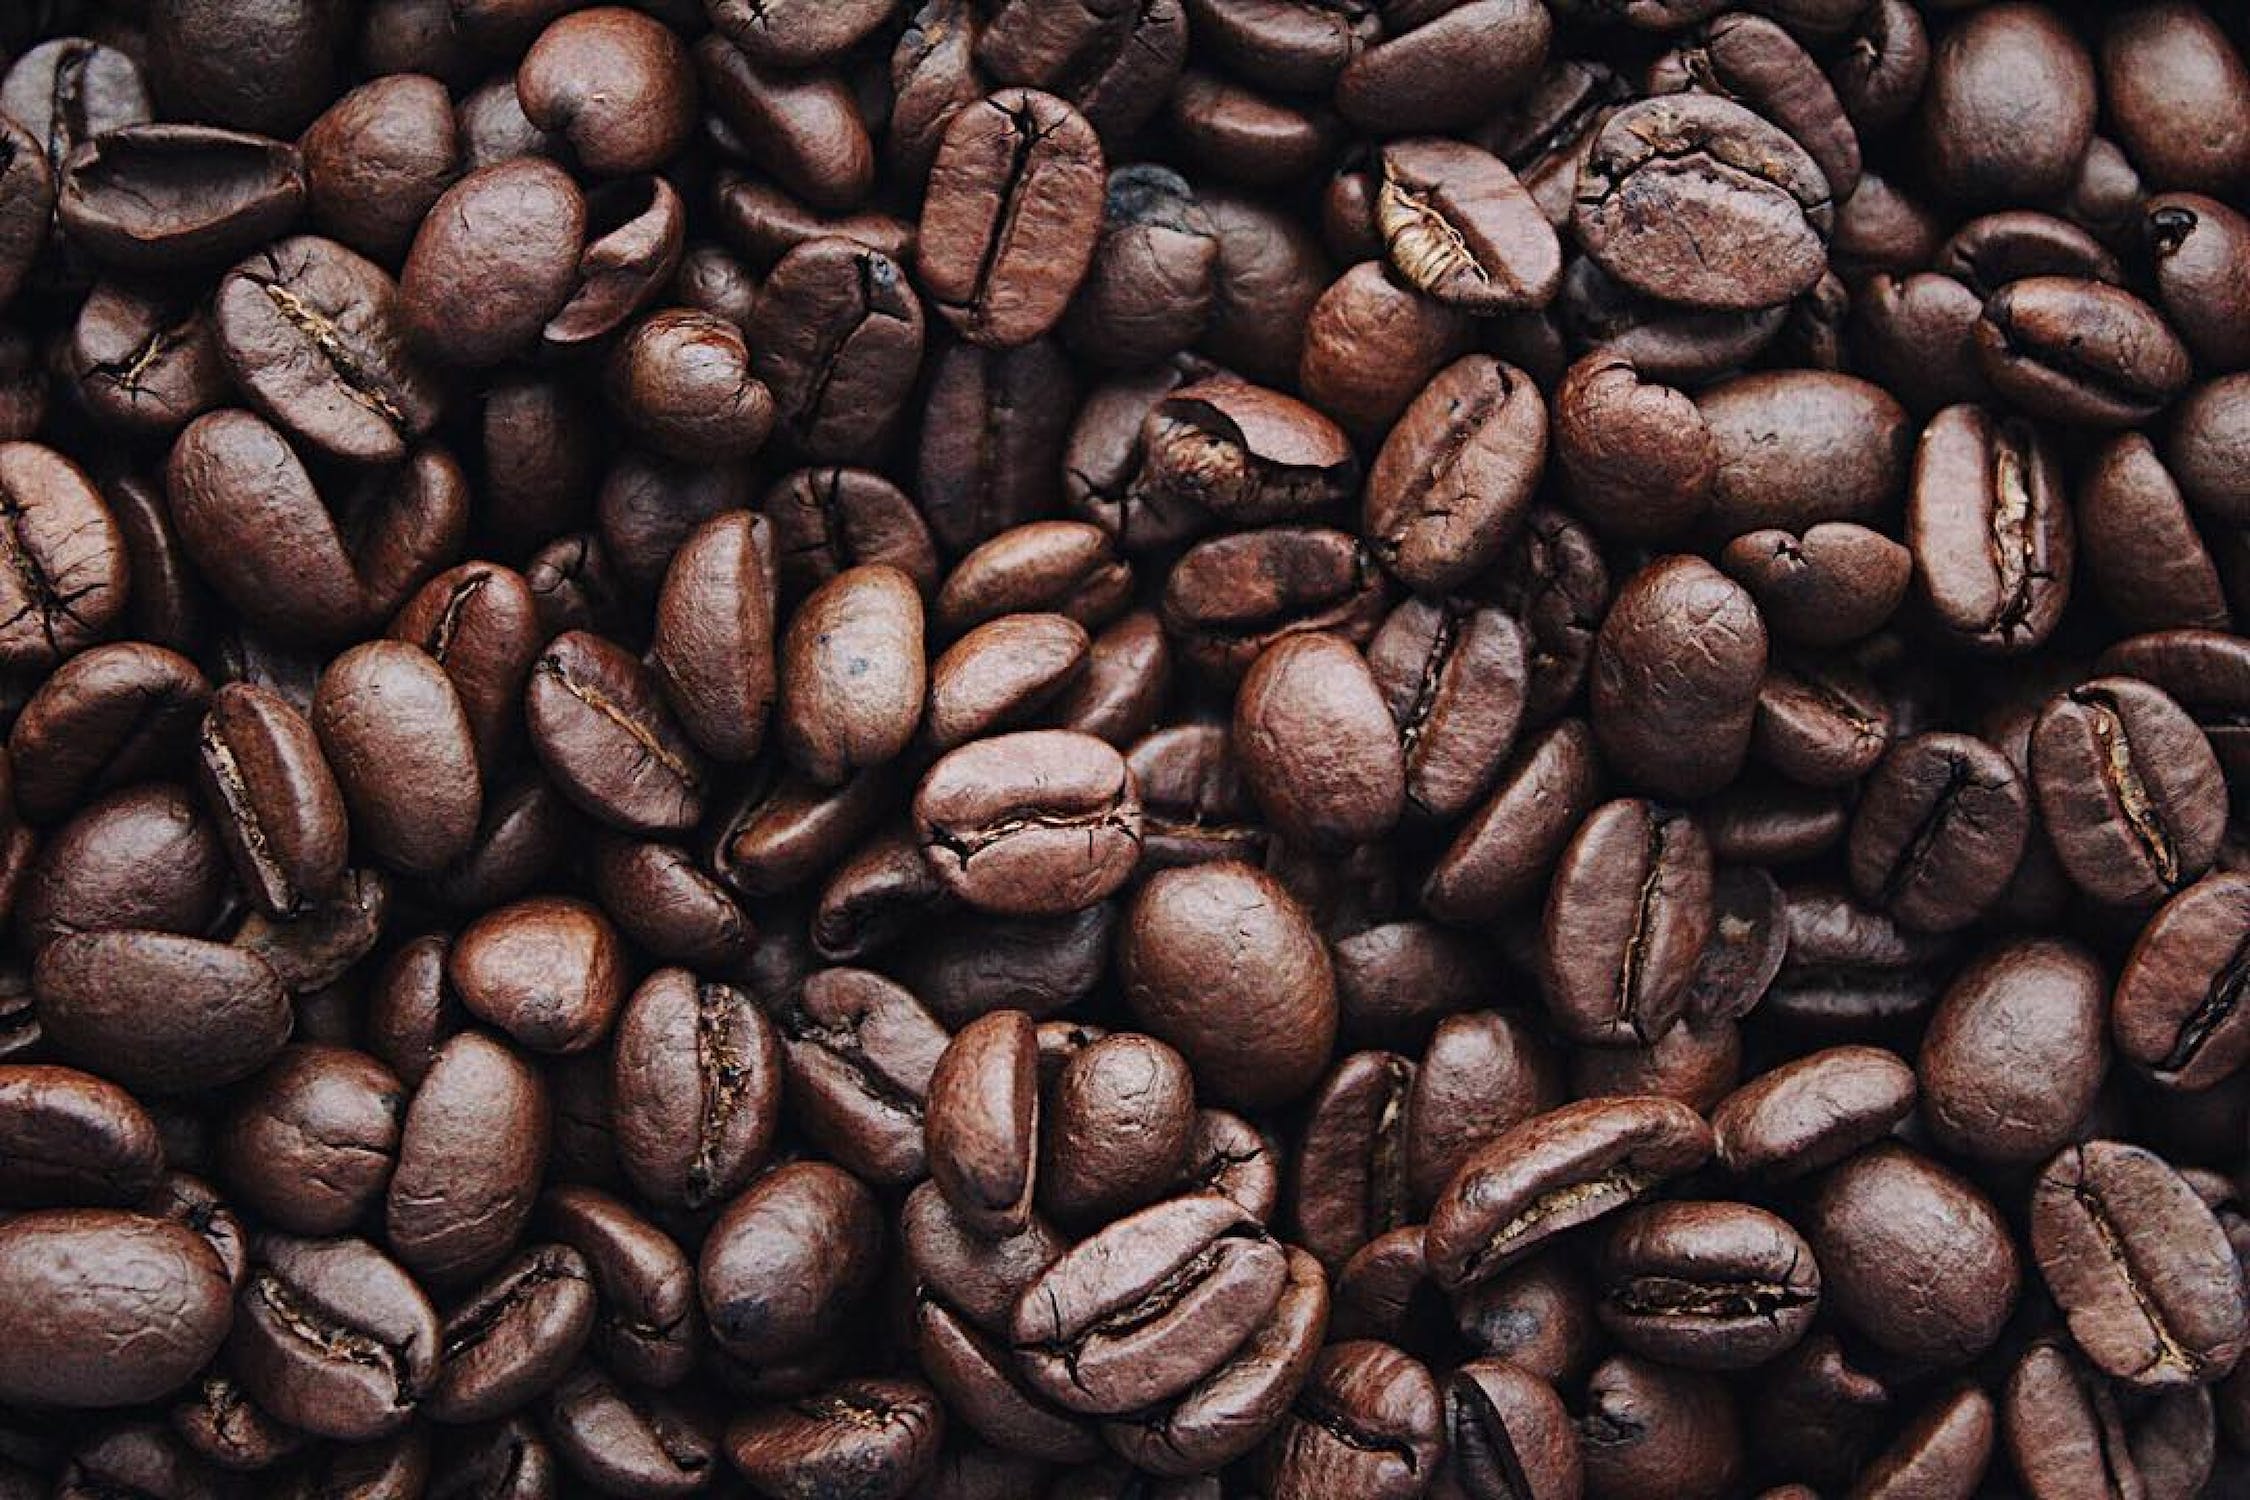 إذا كنت تبحث عن بديل للقهوة يمنحك النشاط والتركيز فهذا المقال لك